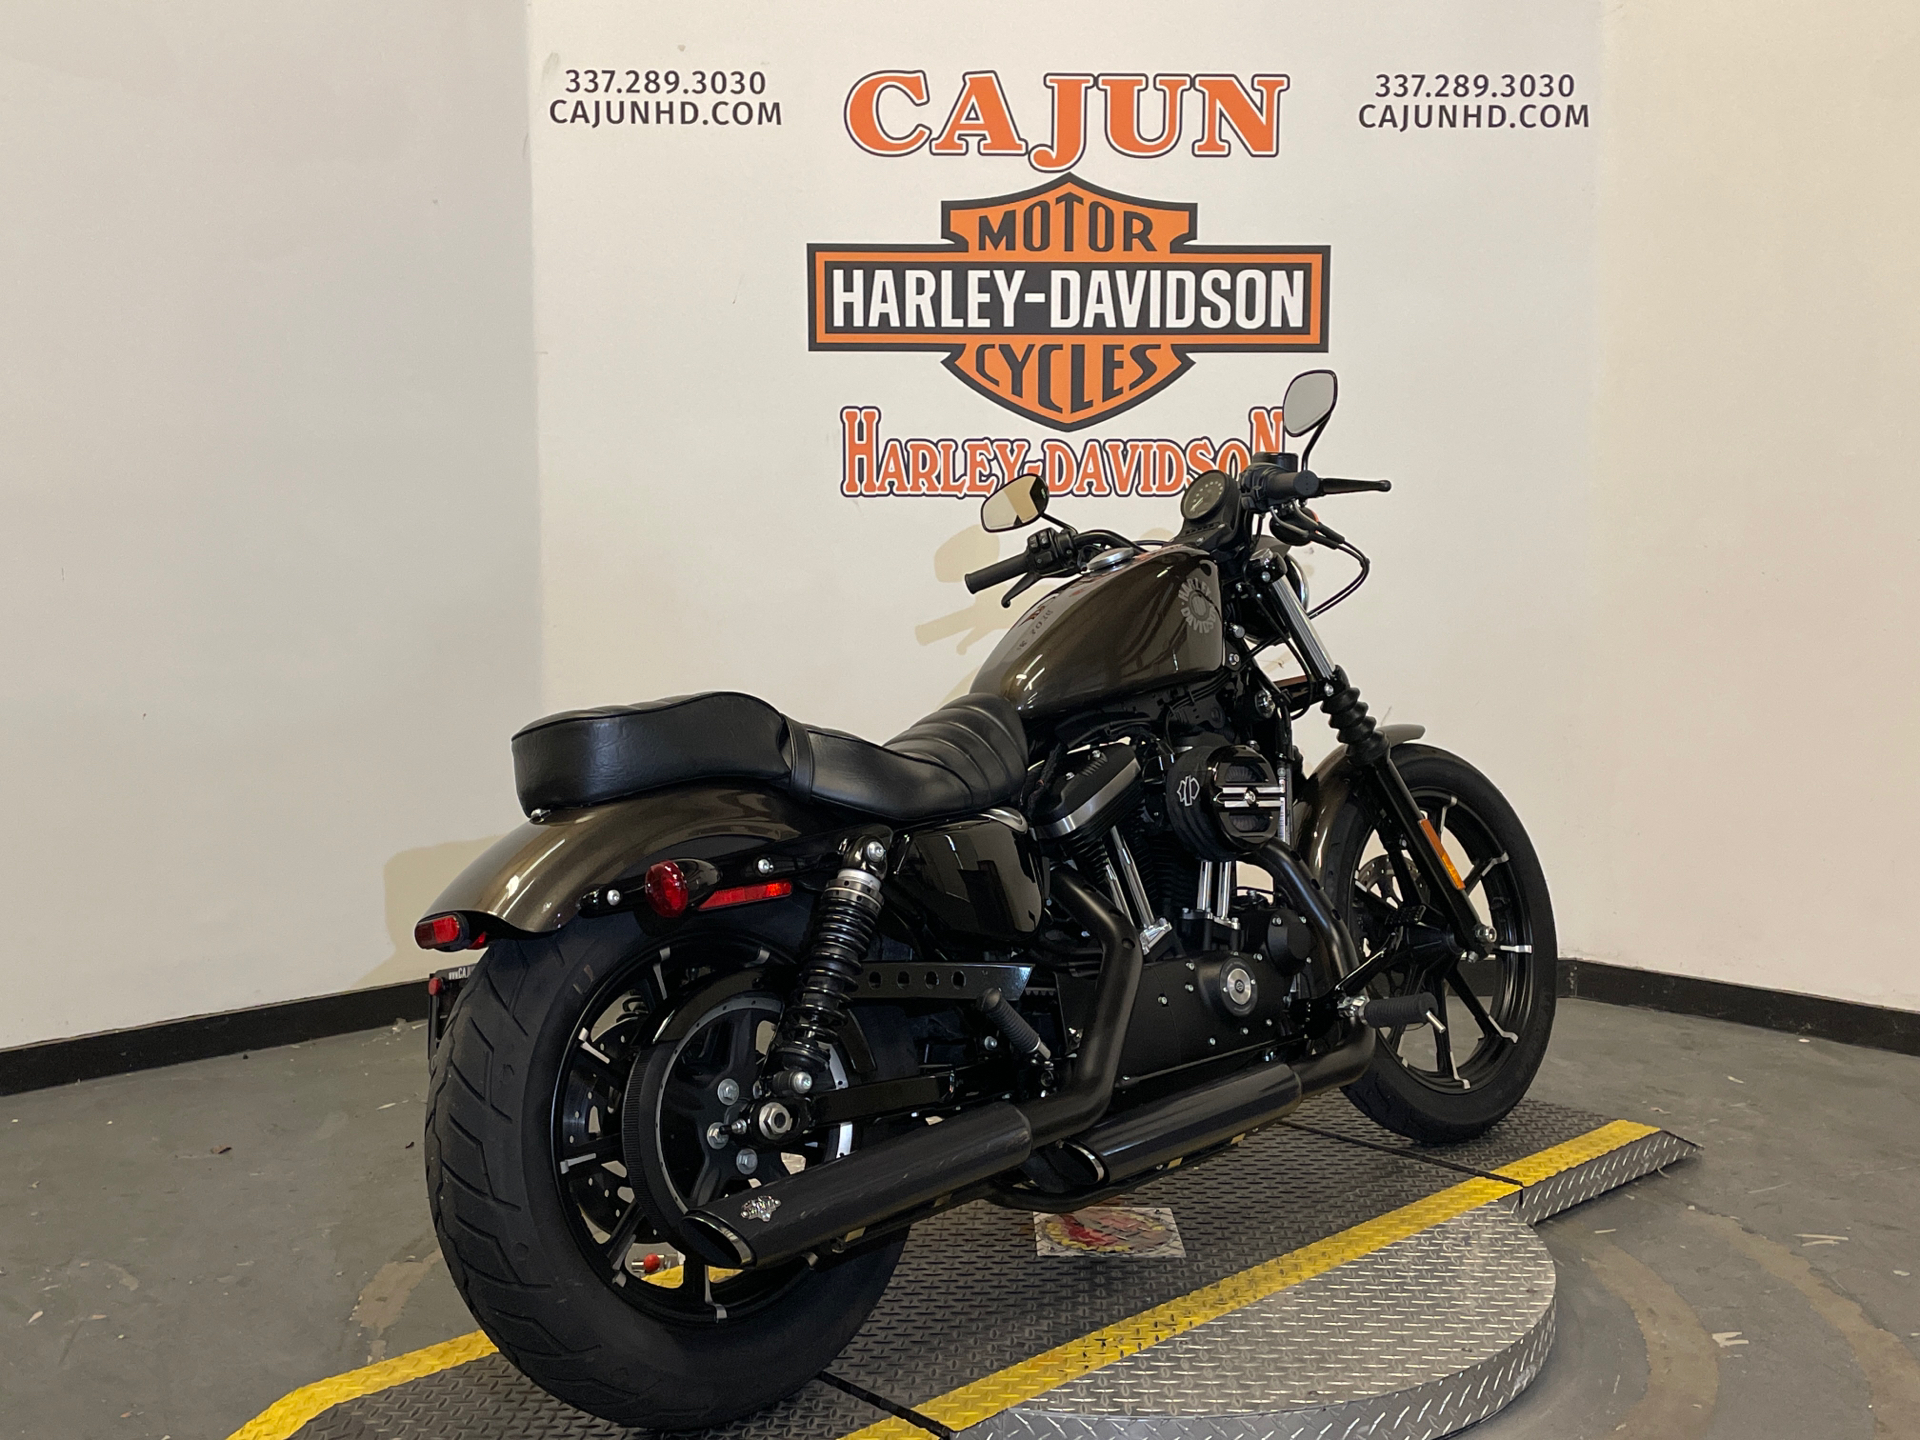 2020 Harley-Davidson Iron 883 near me - Photo 6